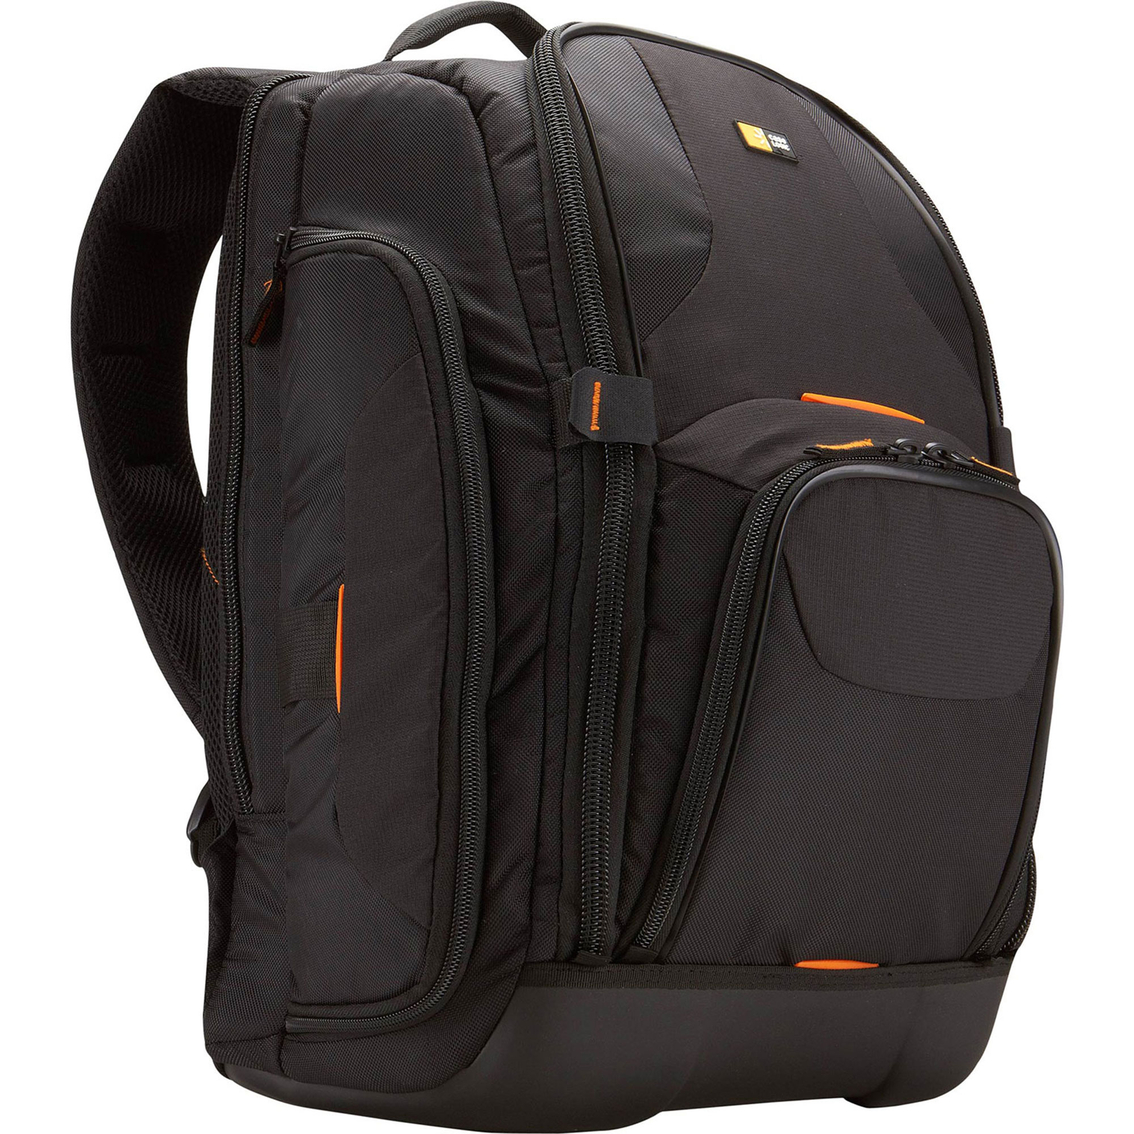 Case Logic SLR Camera/Laptop Backpack